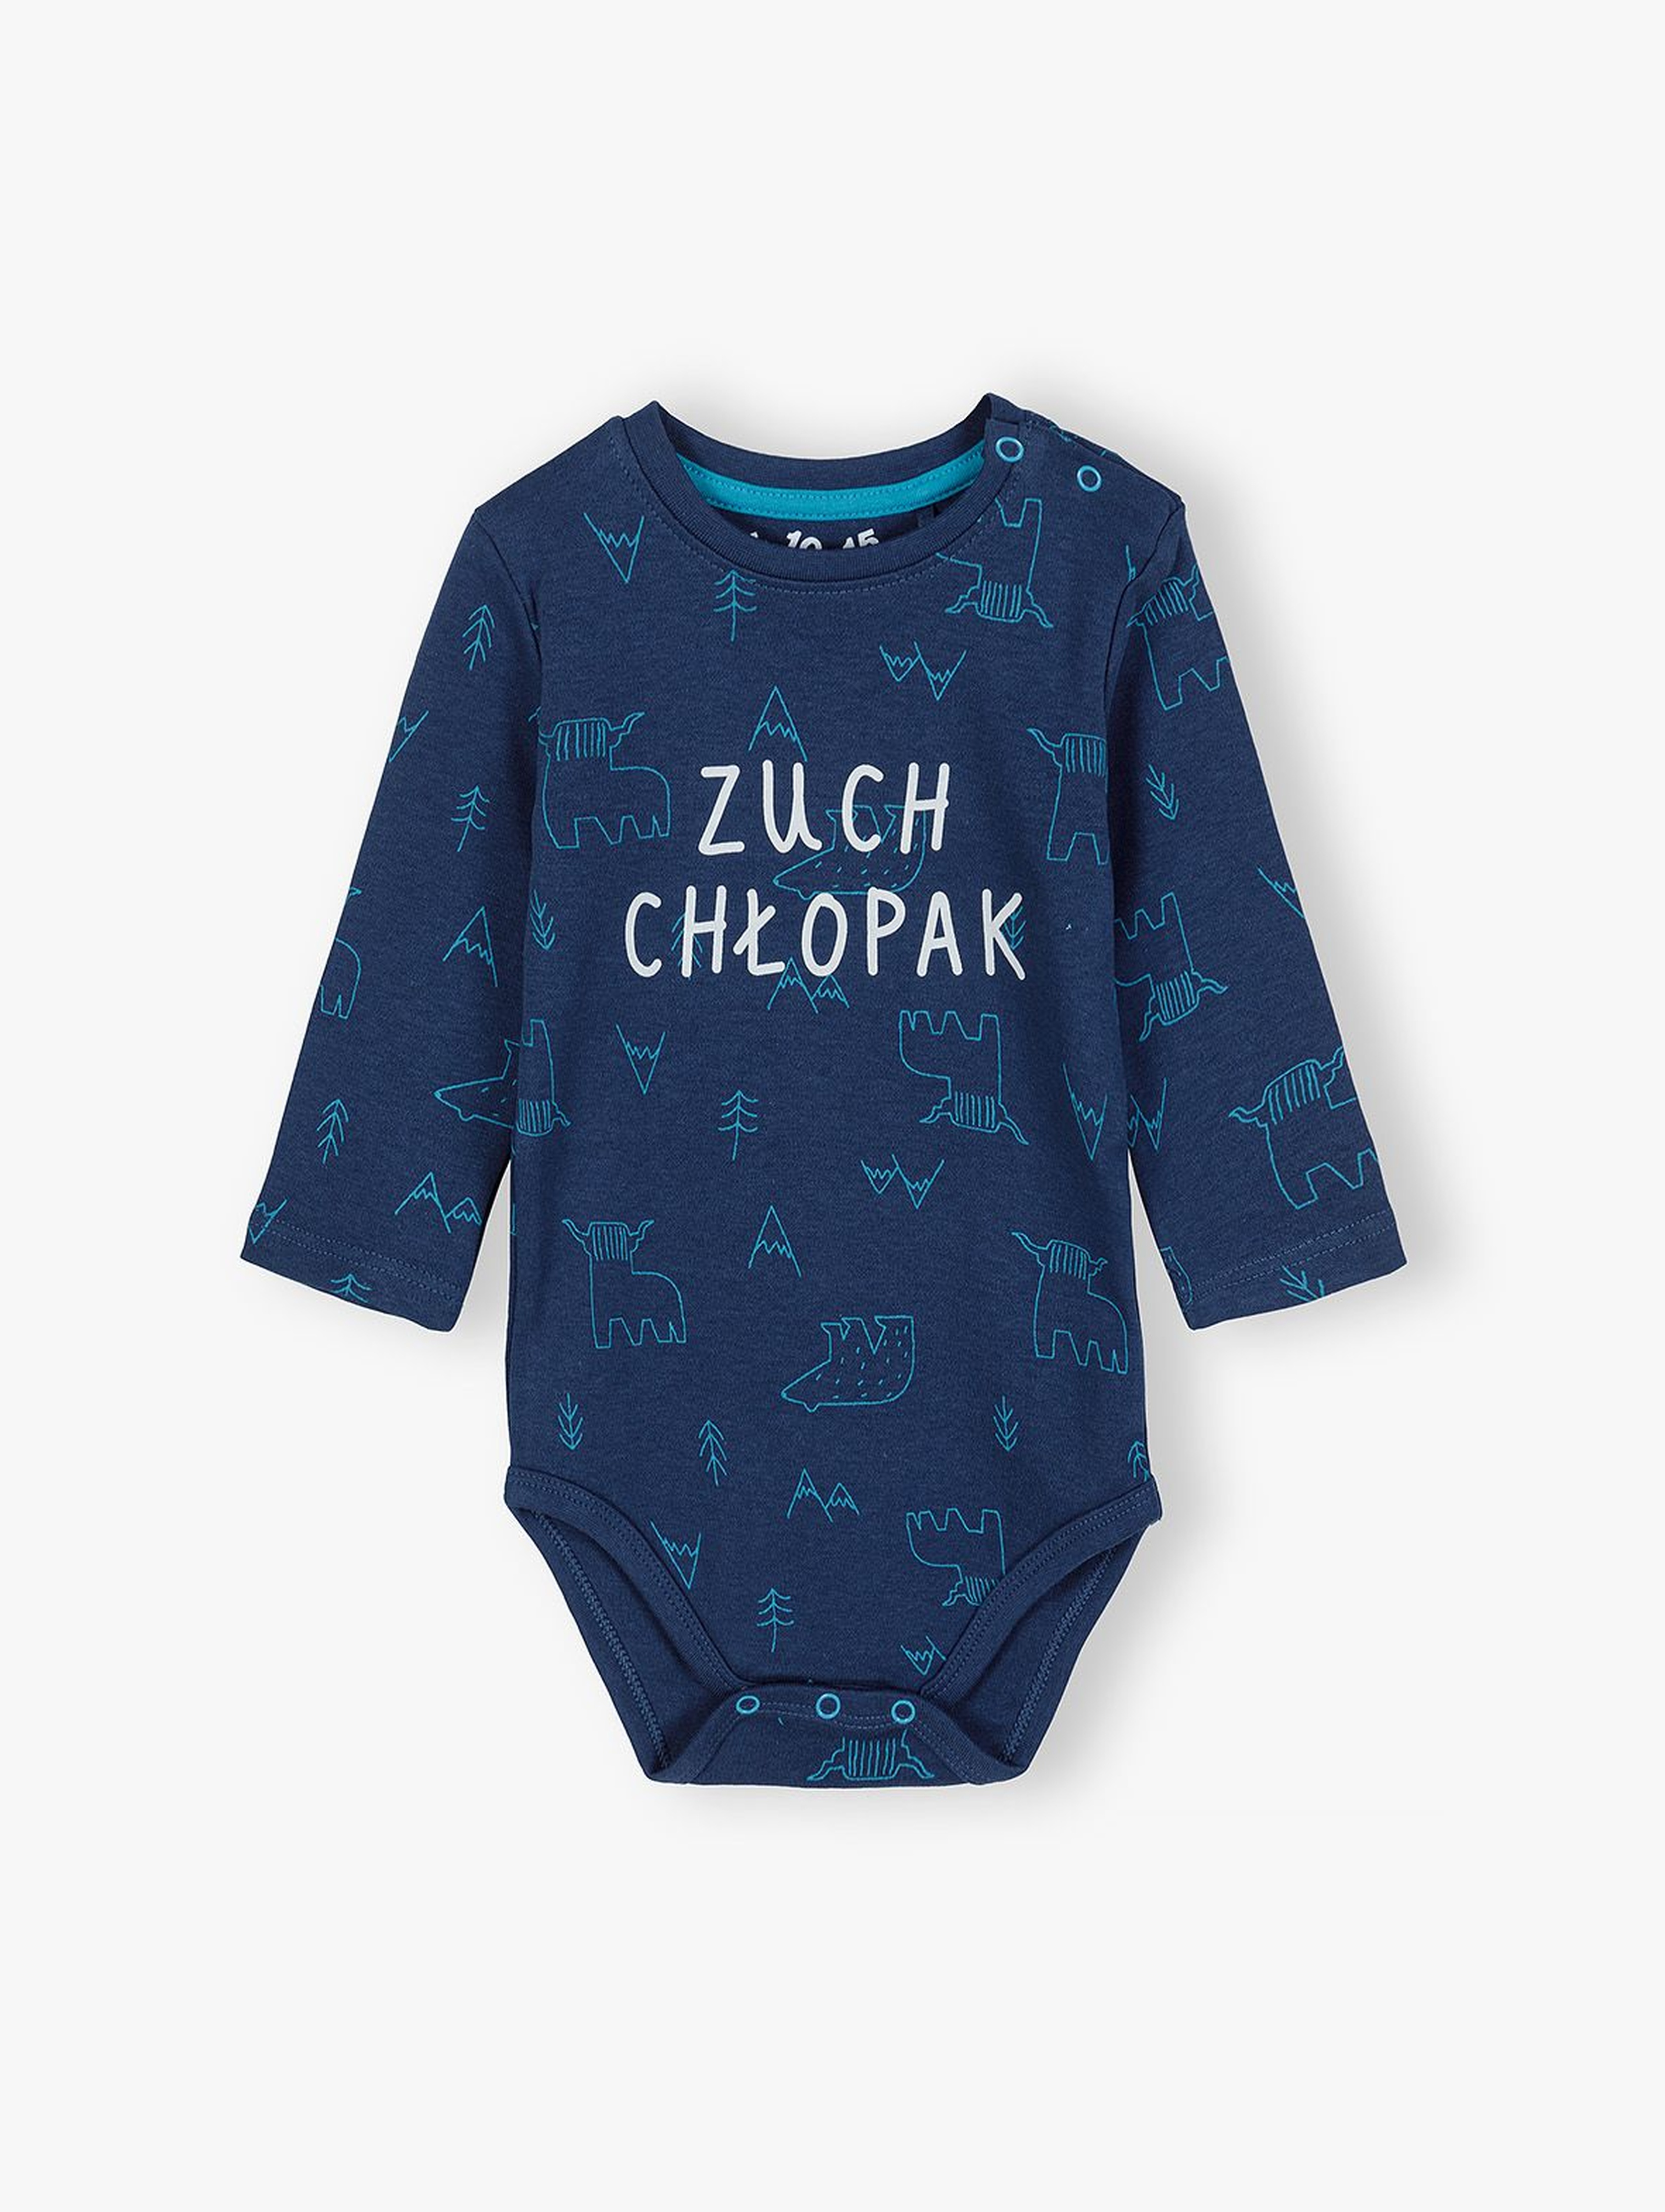 Bawełniane body niemowlęce z polskim napisem - Zuch chłopak